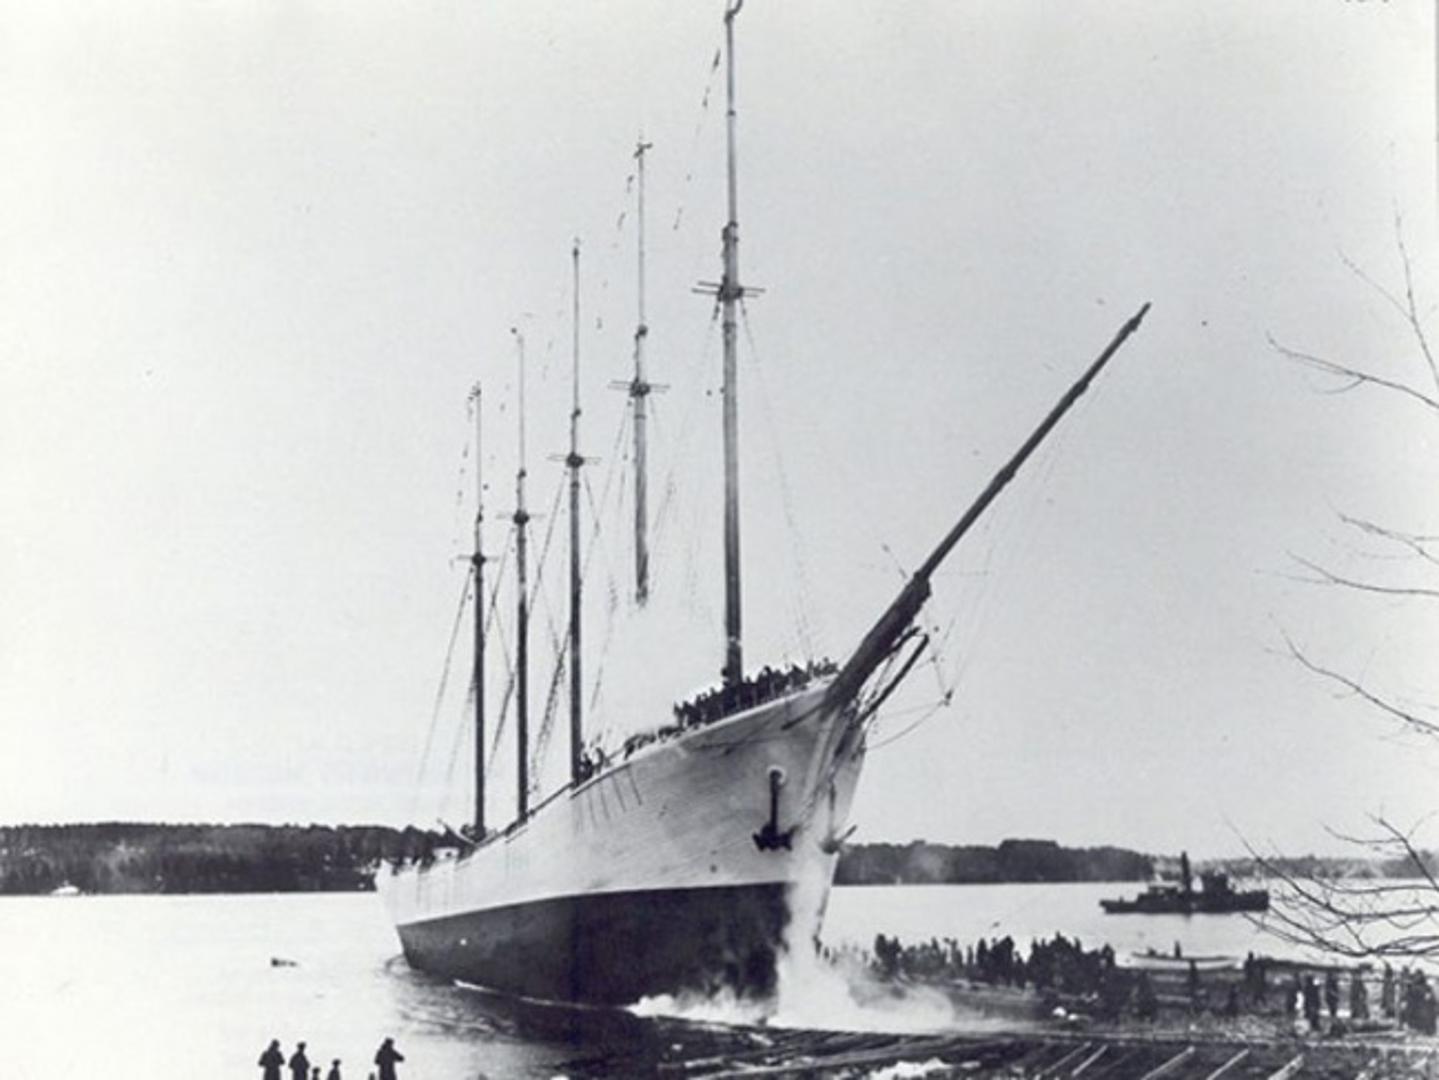 Carroll A. Deering komercijalni je brod koji je 1921. pronađen bez posade, pun hrane i sa svom opremom. Godine 1922. završena je istraga, ali nikada se nije doznalo što se dogodilo s posadom i odakle je brod. Zato ga nazivaju "brod duhova".